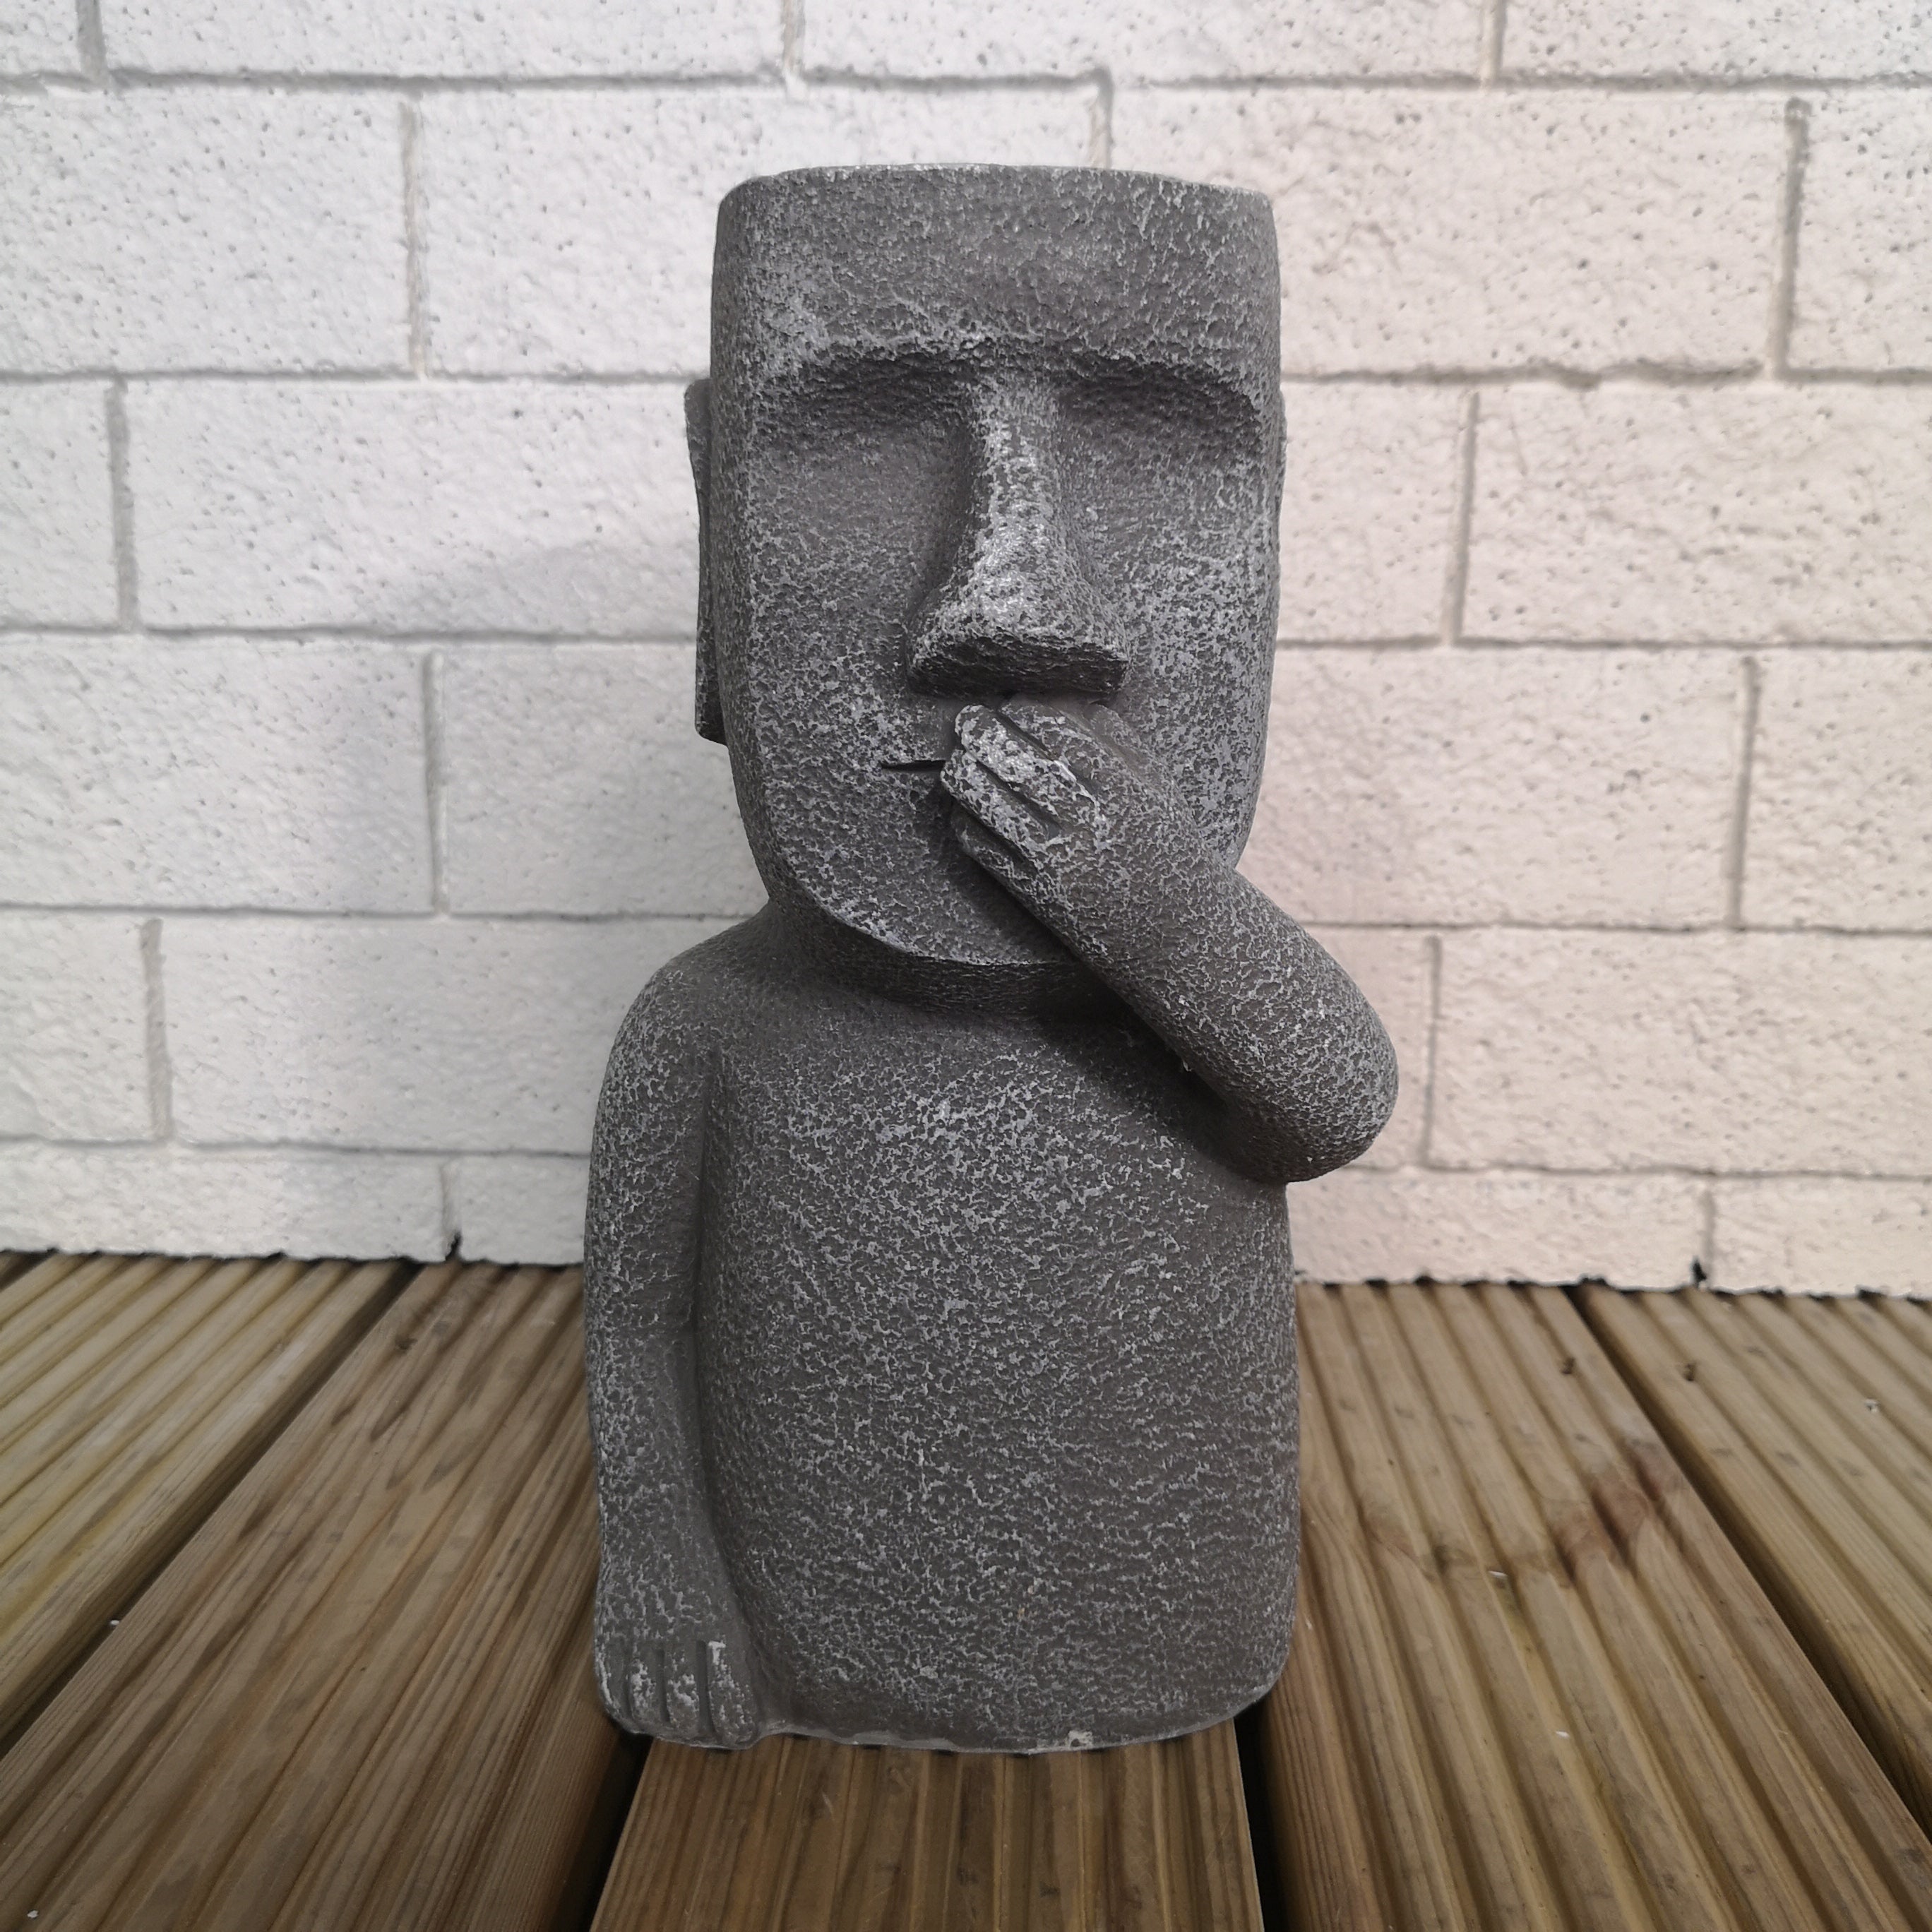 30cm Easter Island Speak No Evil Garden Patio Decoration Sculpture Plant Pot